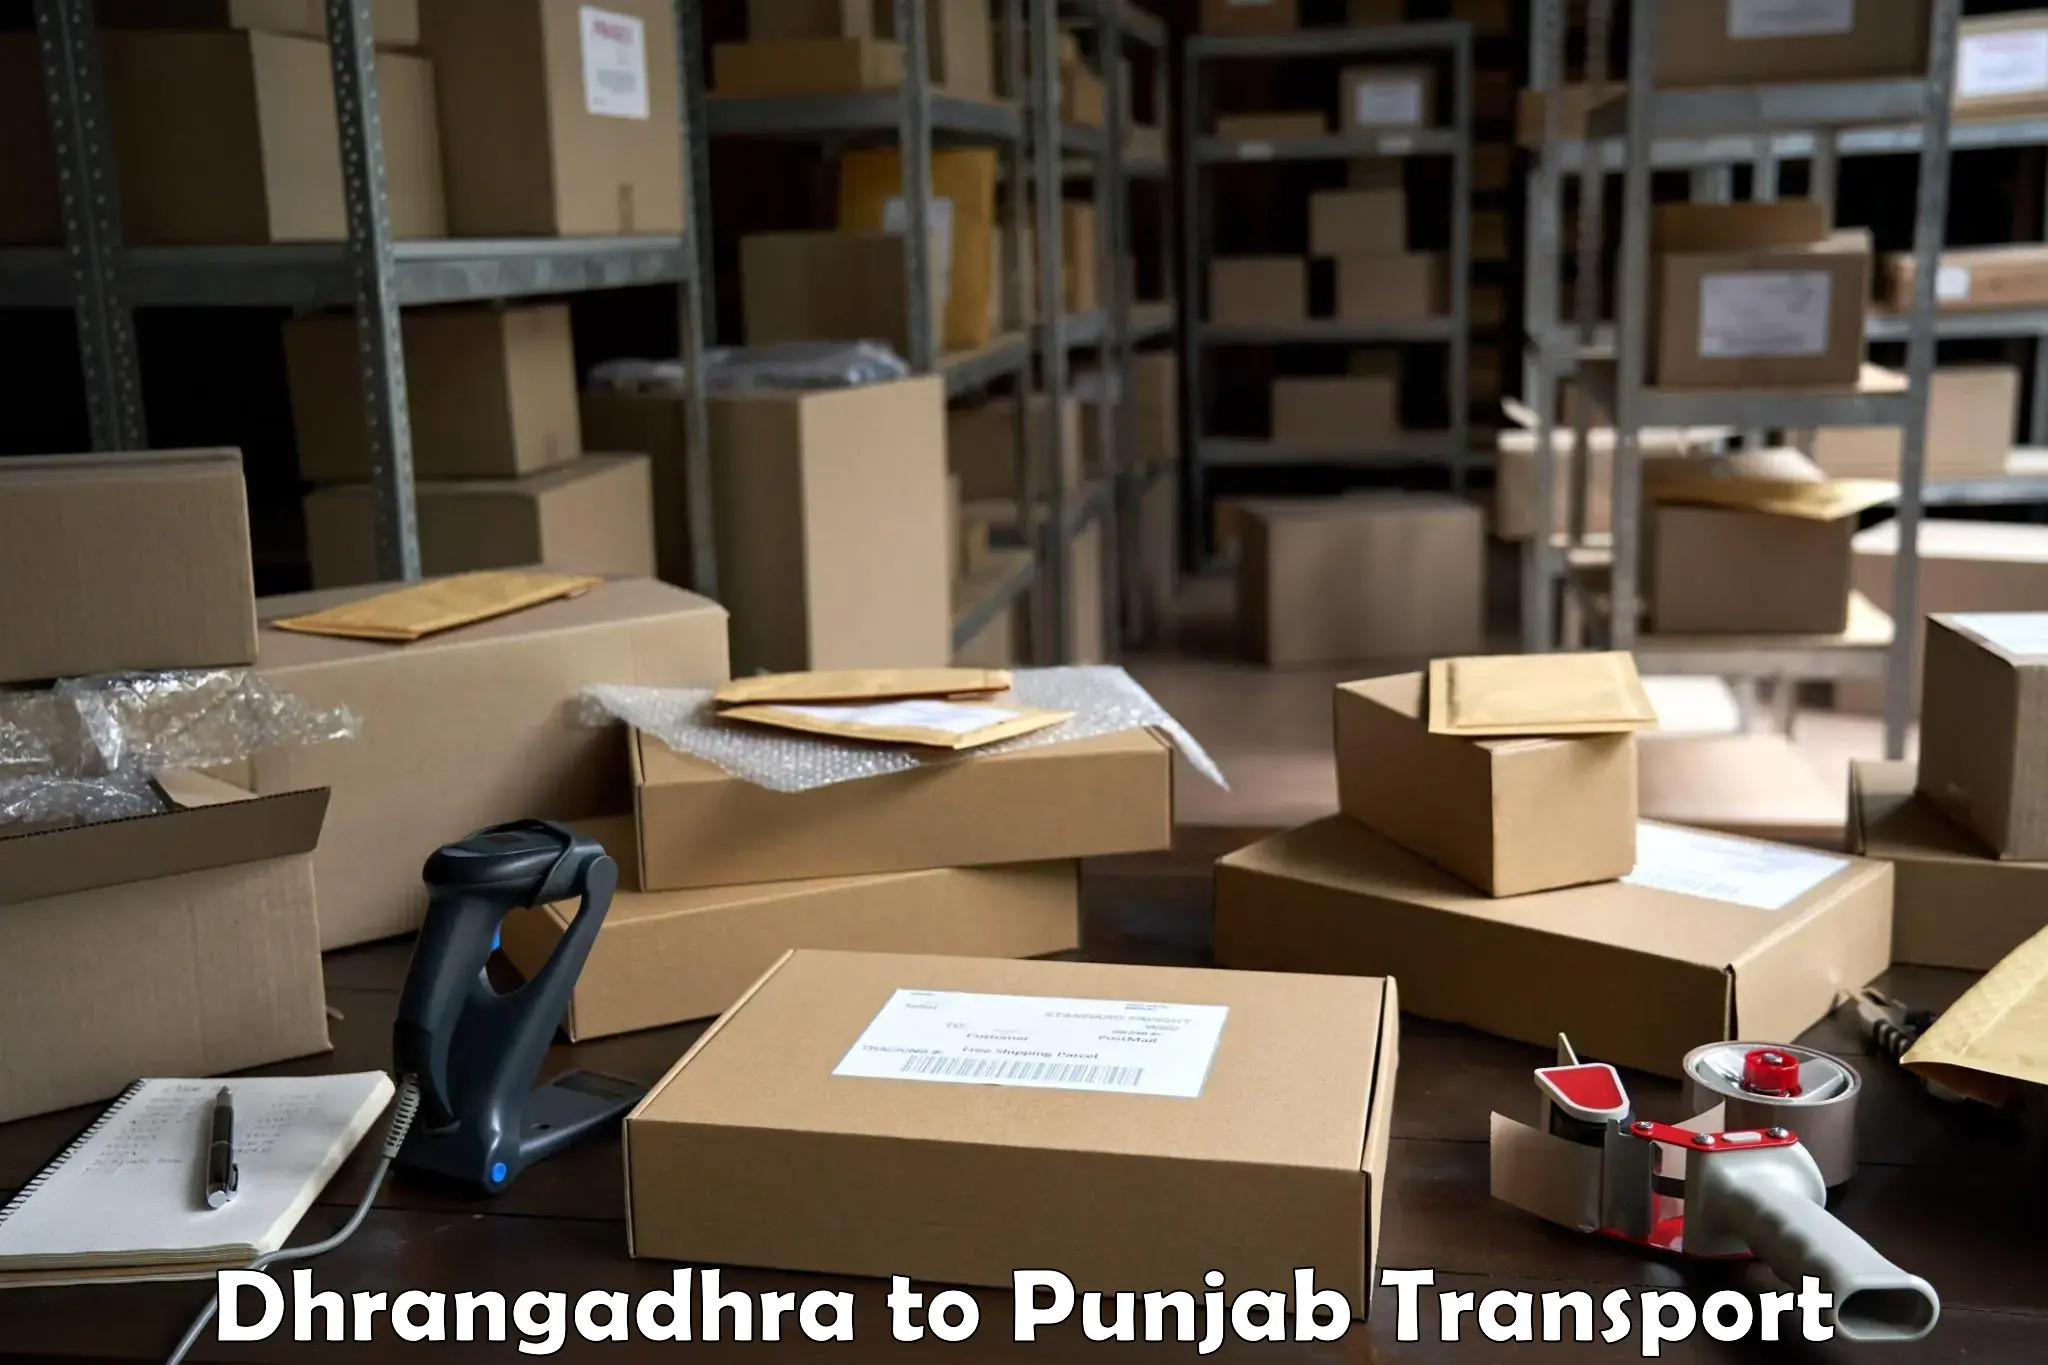 Container transport service Dhrangadhra to Dinanagar